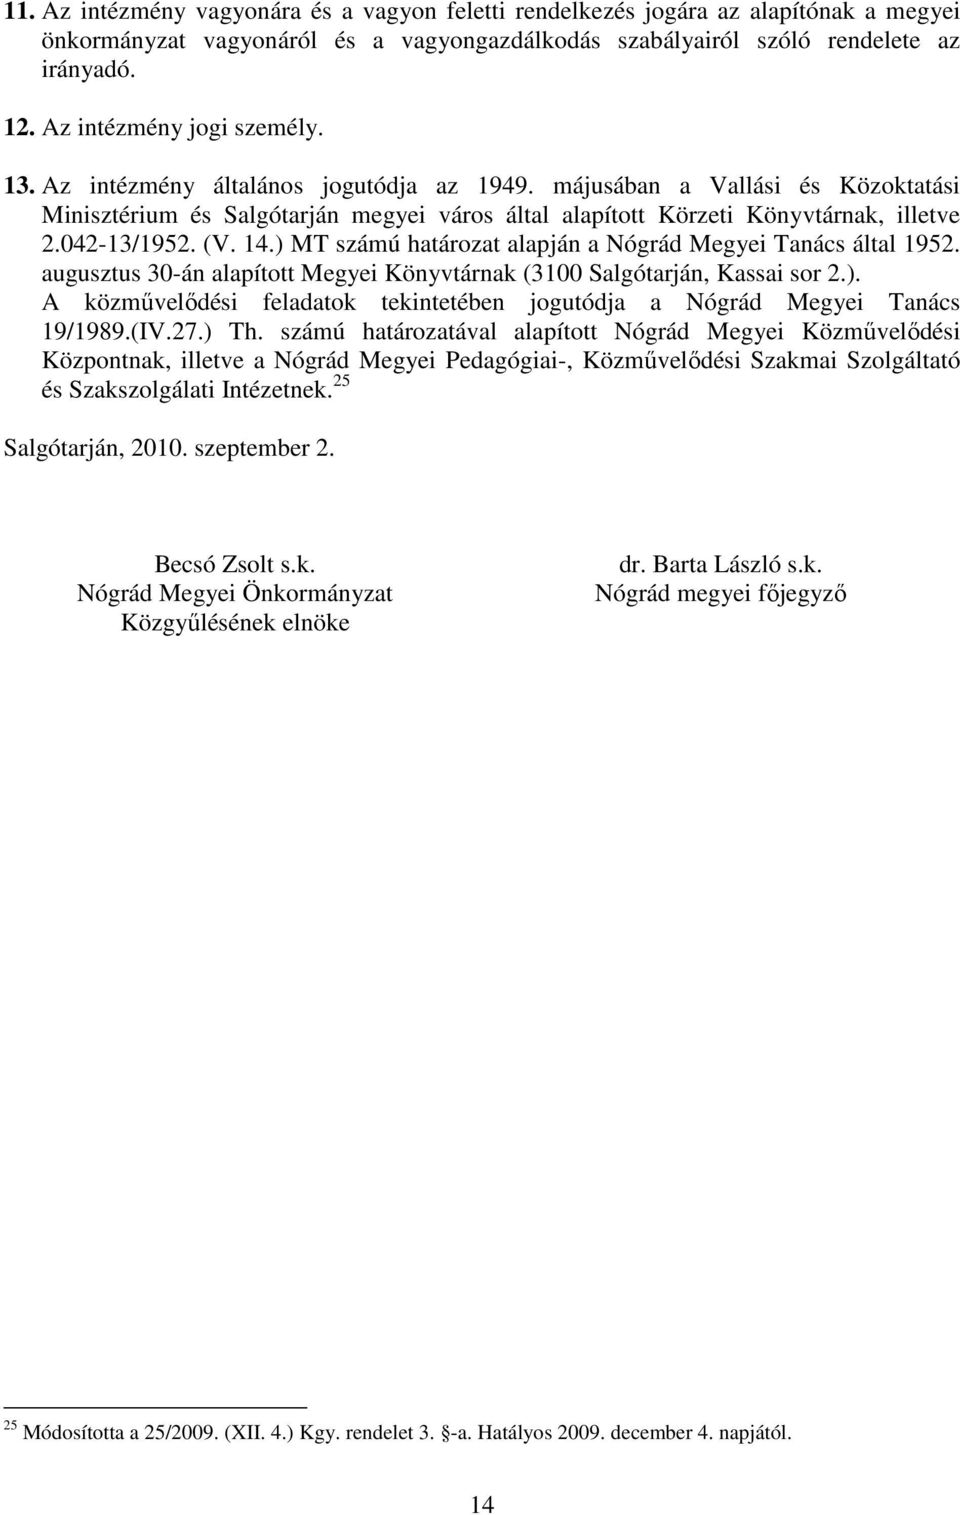 042-13/1952. (V. 14.) MT számú határozat alapján a Nógrád Megyei Tanács által 1952. augusztus 30-án alapított Megyei Könyvtárnak (3100 Salgótarján, Kassai sor 2.). A közművelődési feladatok tekintetében jogutódja a Nógrád Megyei Tanács 19/1989.